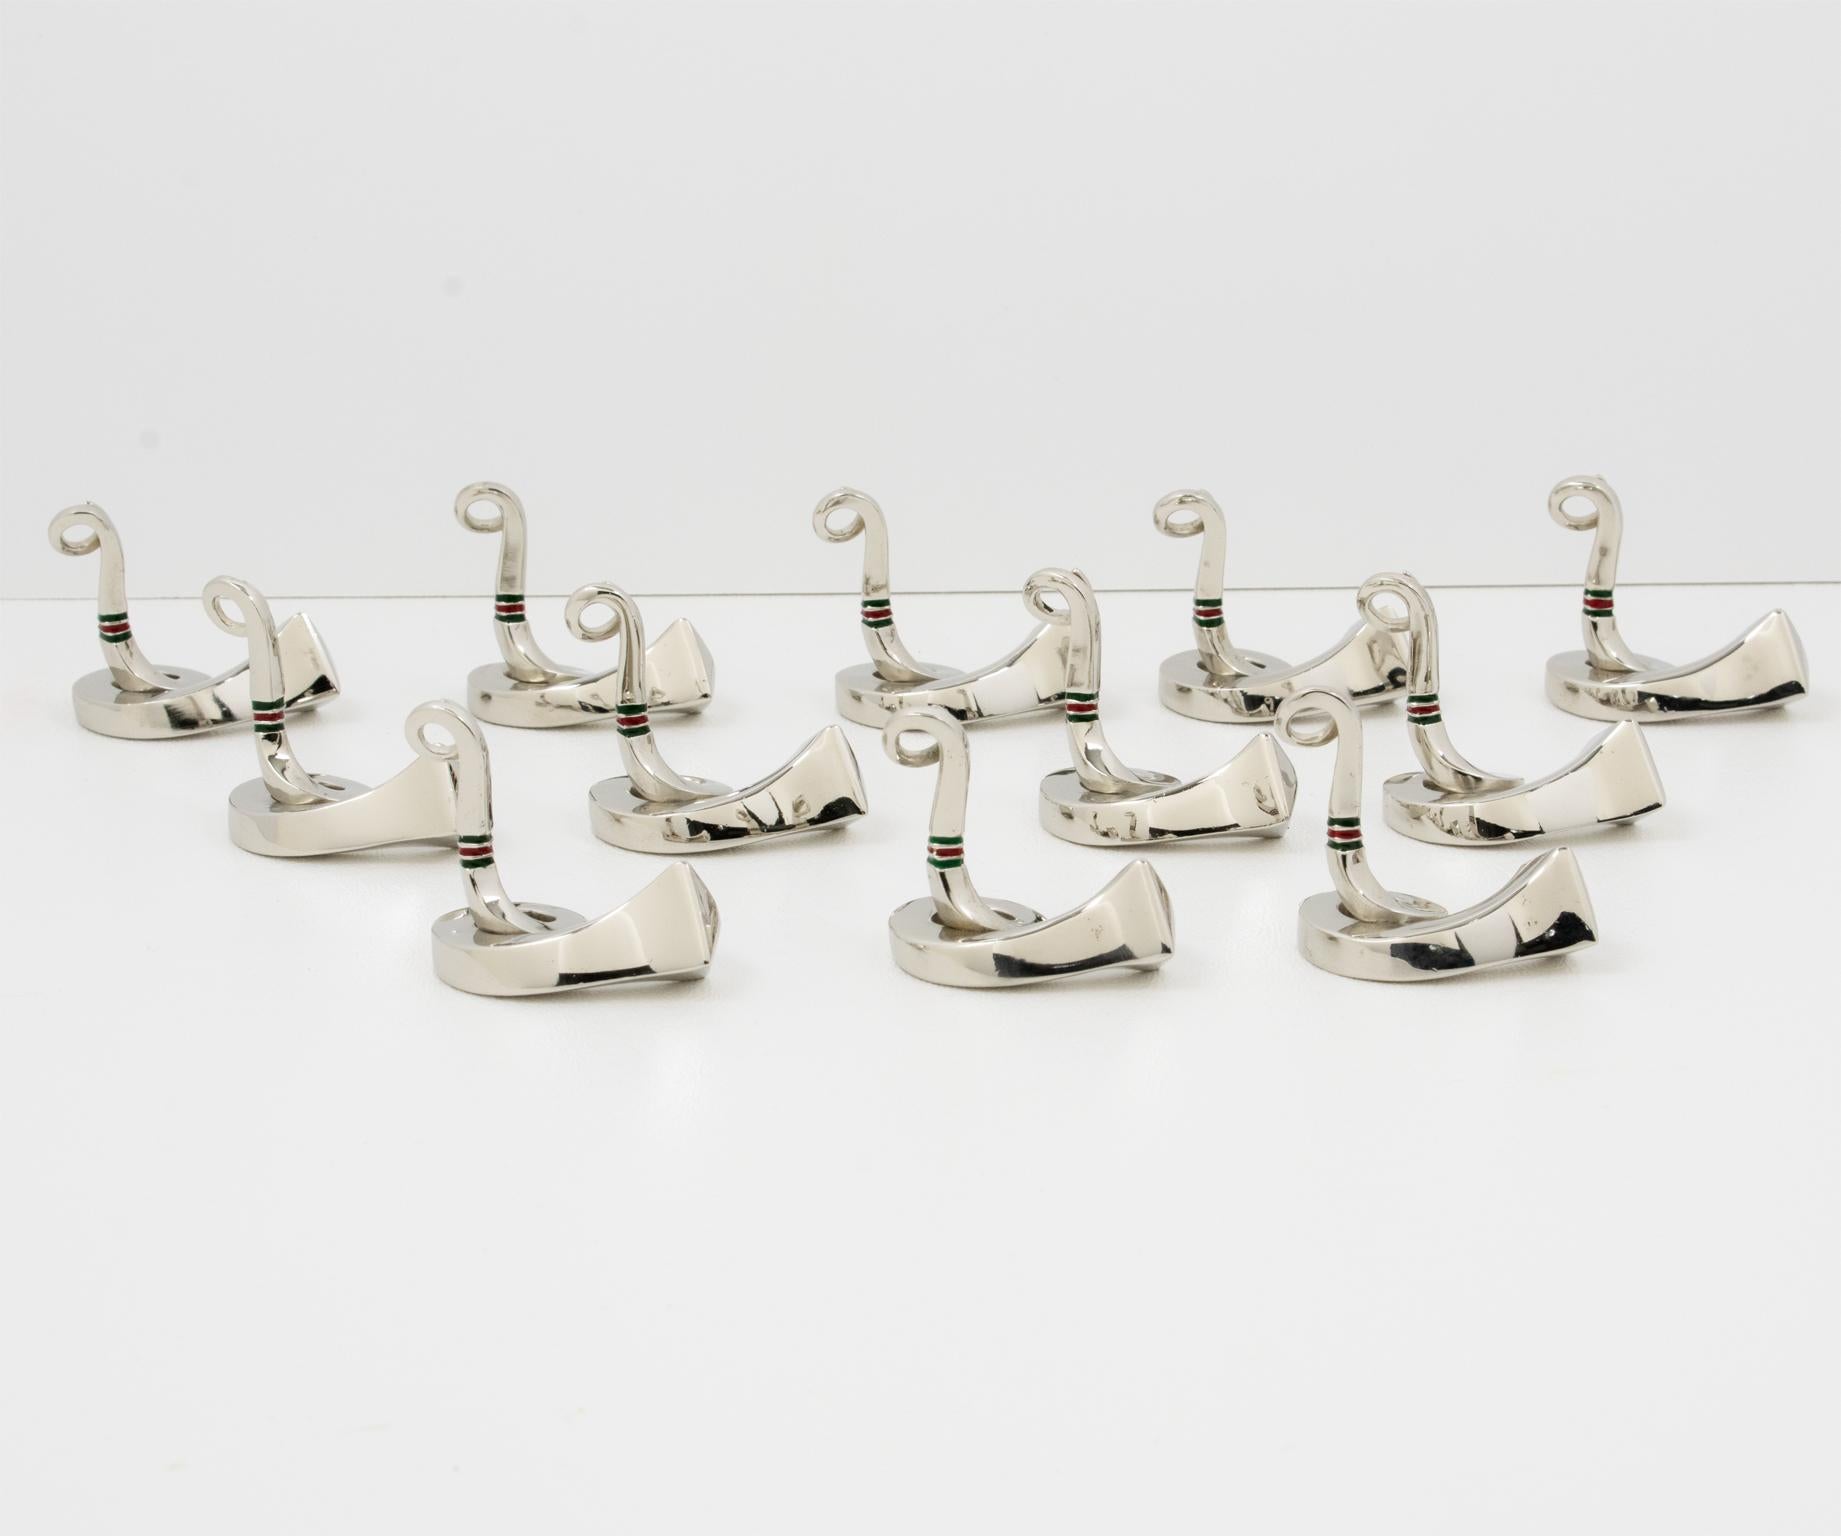 Speisen Sie stilvoll mit diesen skurrilen Tischkartenhaltern aus verchromtem Metall und Emaille, entworfen von Gucci, Italien. Das zwölfteilige Set zeigt ein Reitermotiv mit einem hochglanzverchromten Hufeisennagel oder Hufnagel aus Messing, der zum